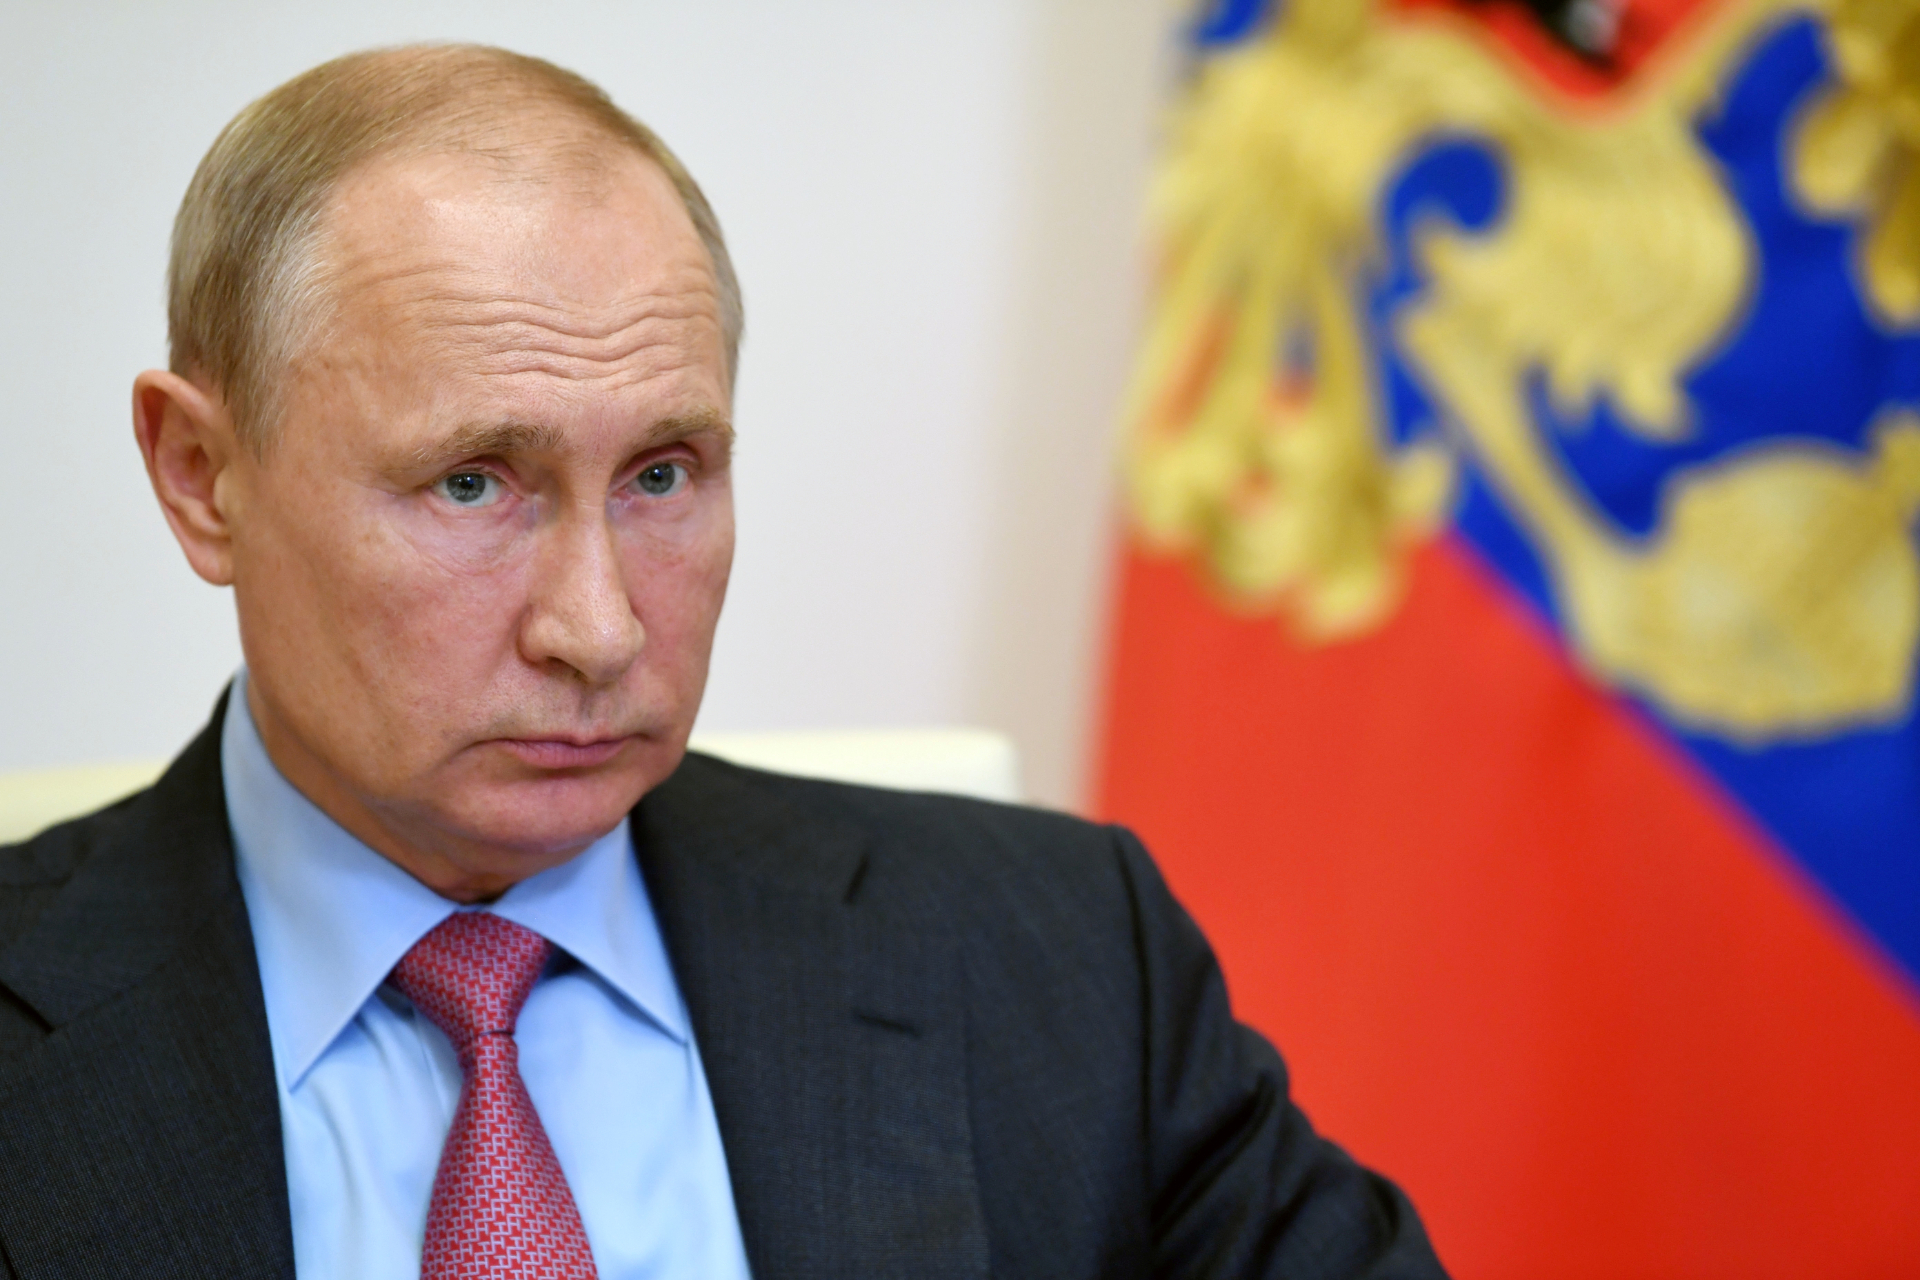 Rússia registra a primeira vacina contra Covid-19 do mundo, anuncia Putin